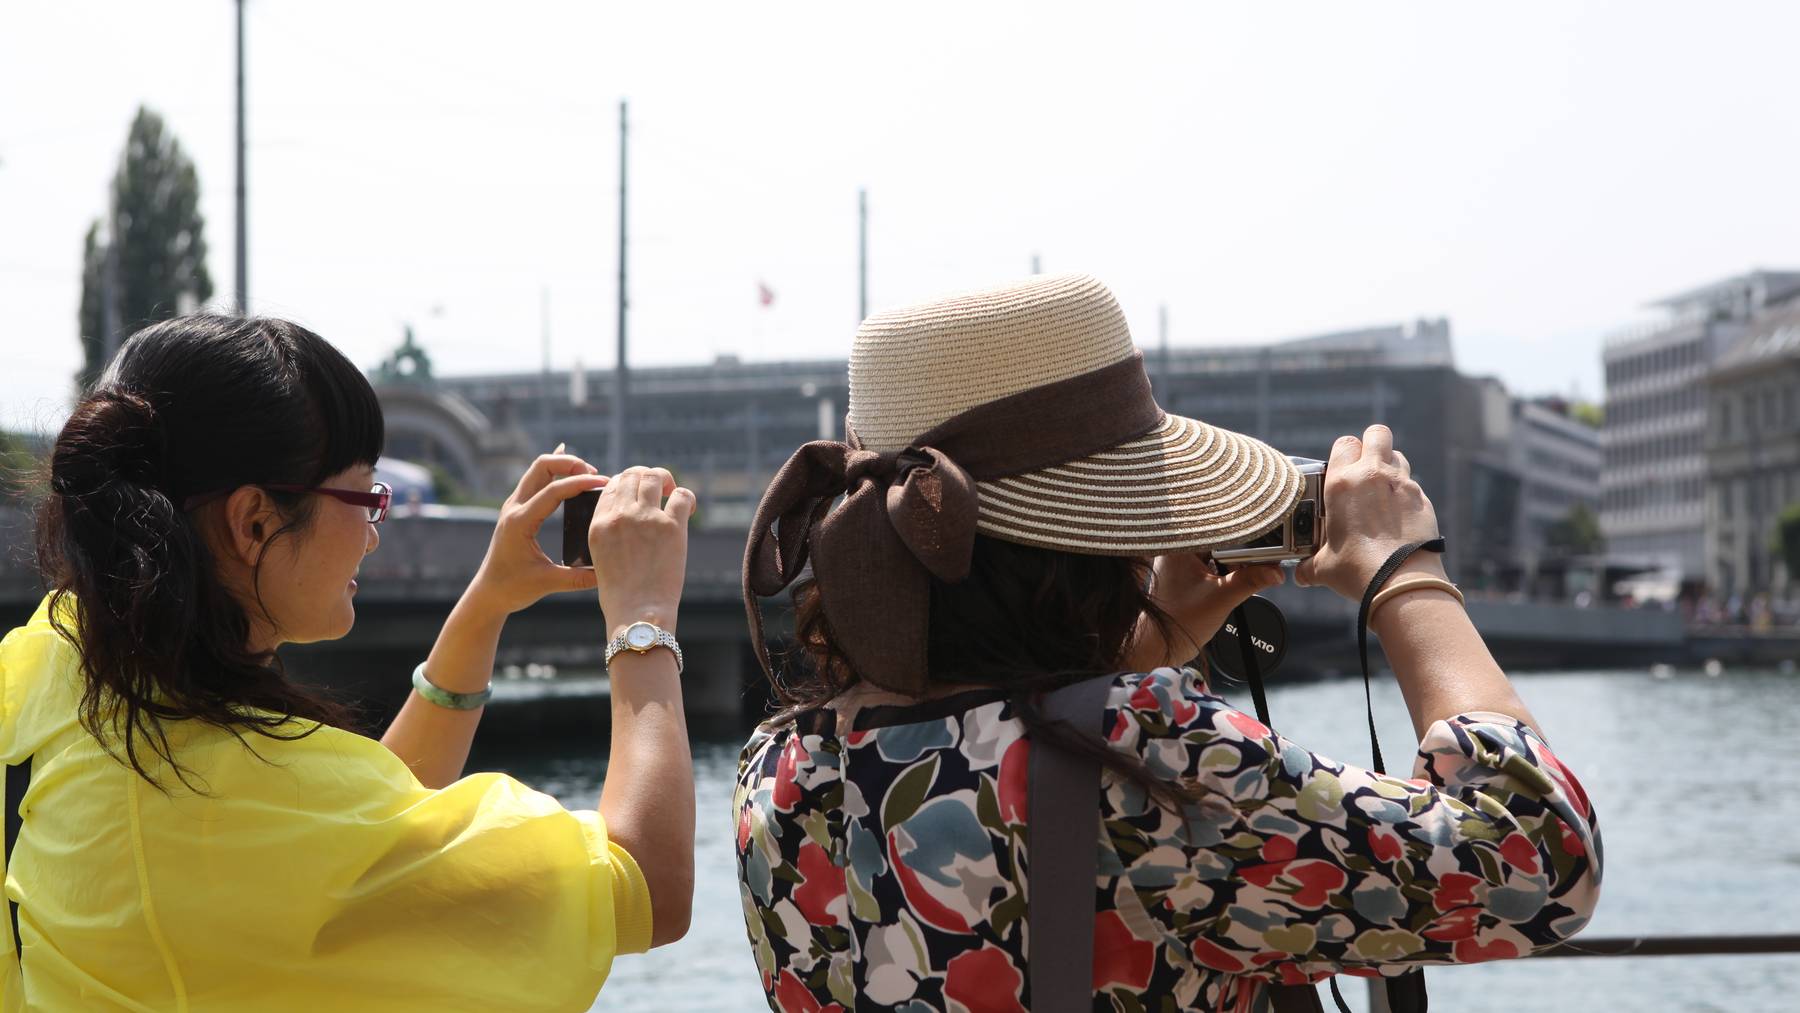 Luzerner Tourismusdirektor warnt vor übertriebener Kritik an asiatischen Touristen